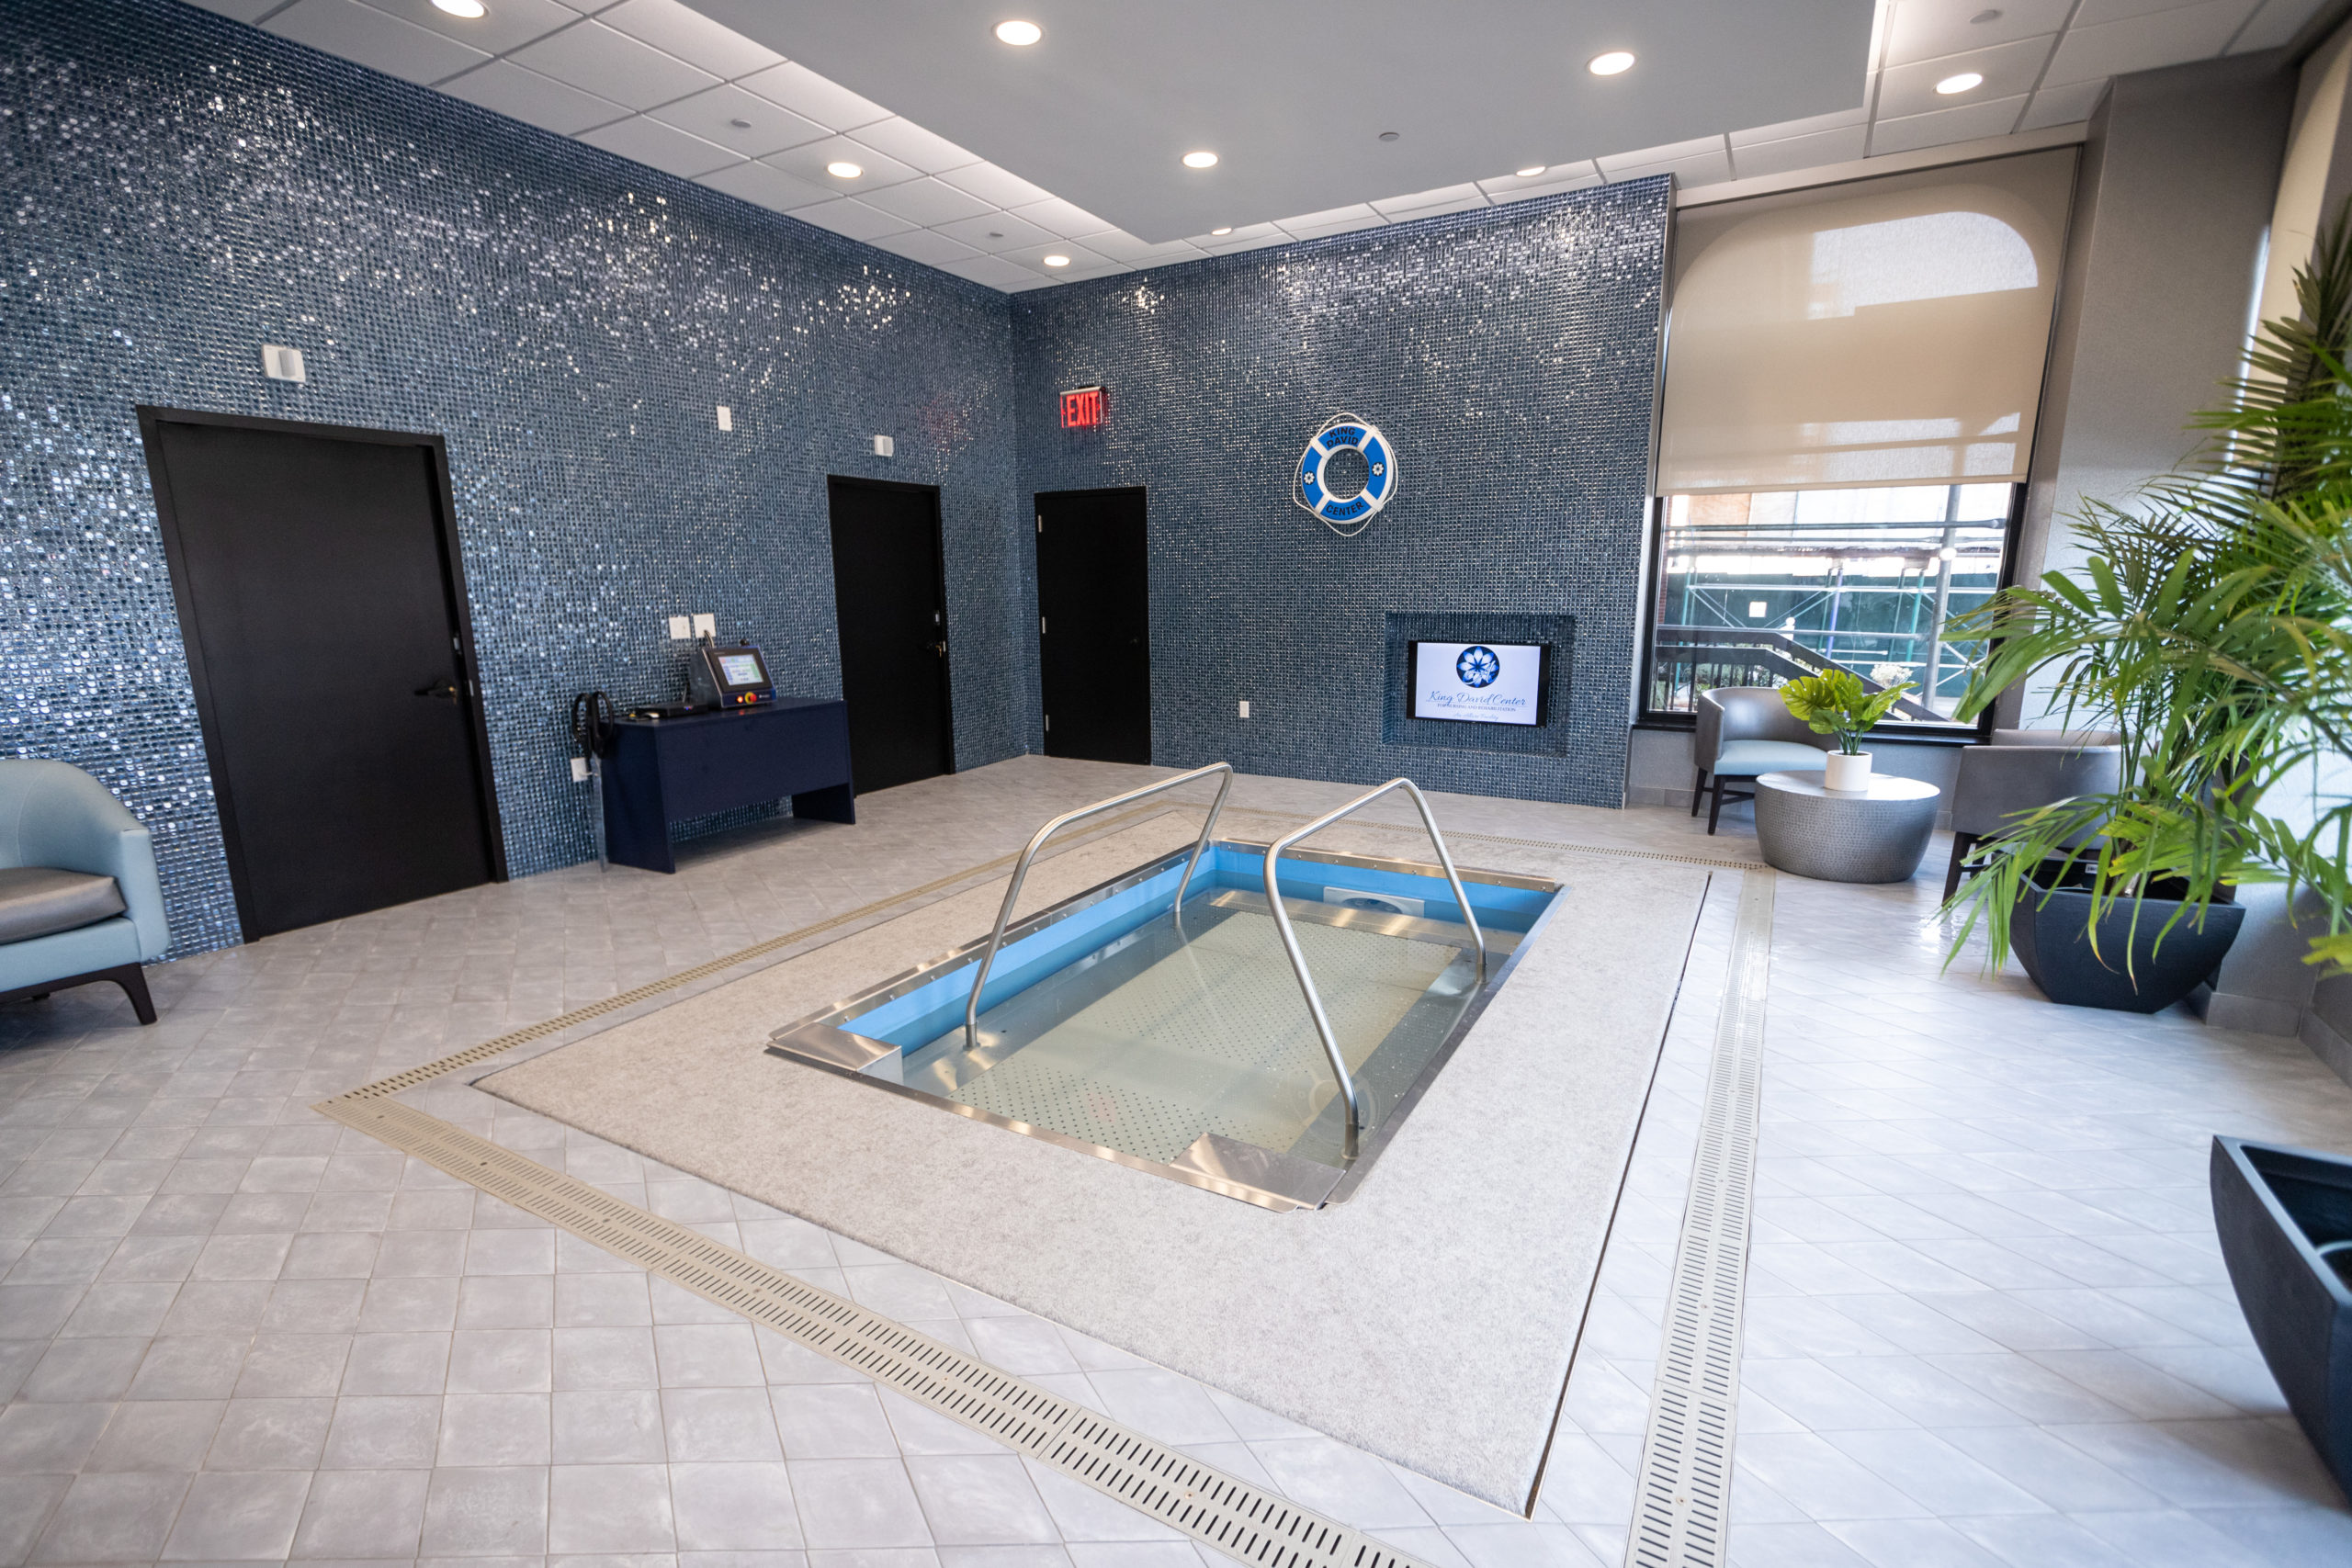 Aqua Therapy Pool at King David Center